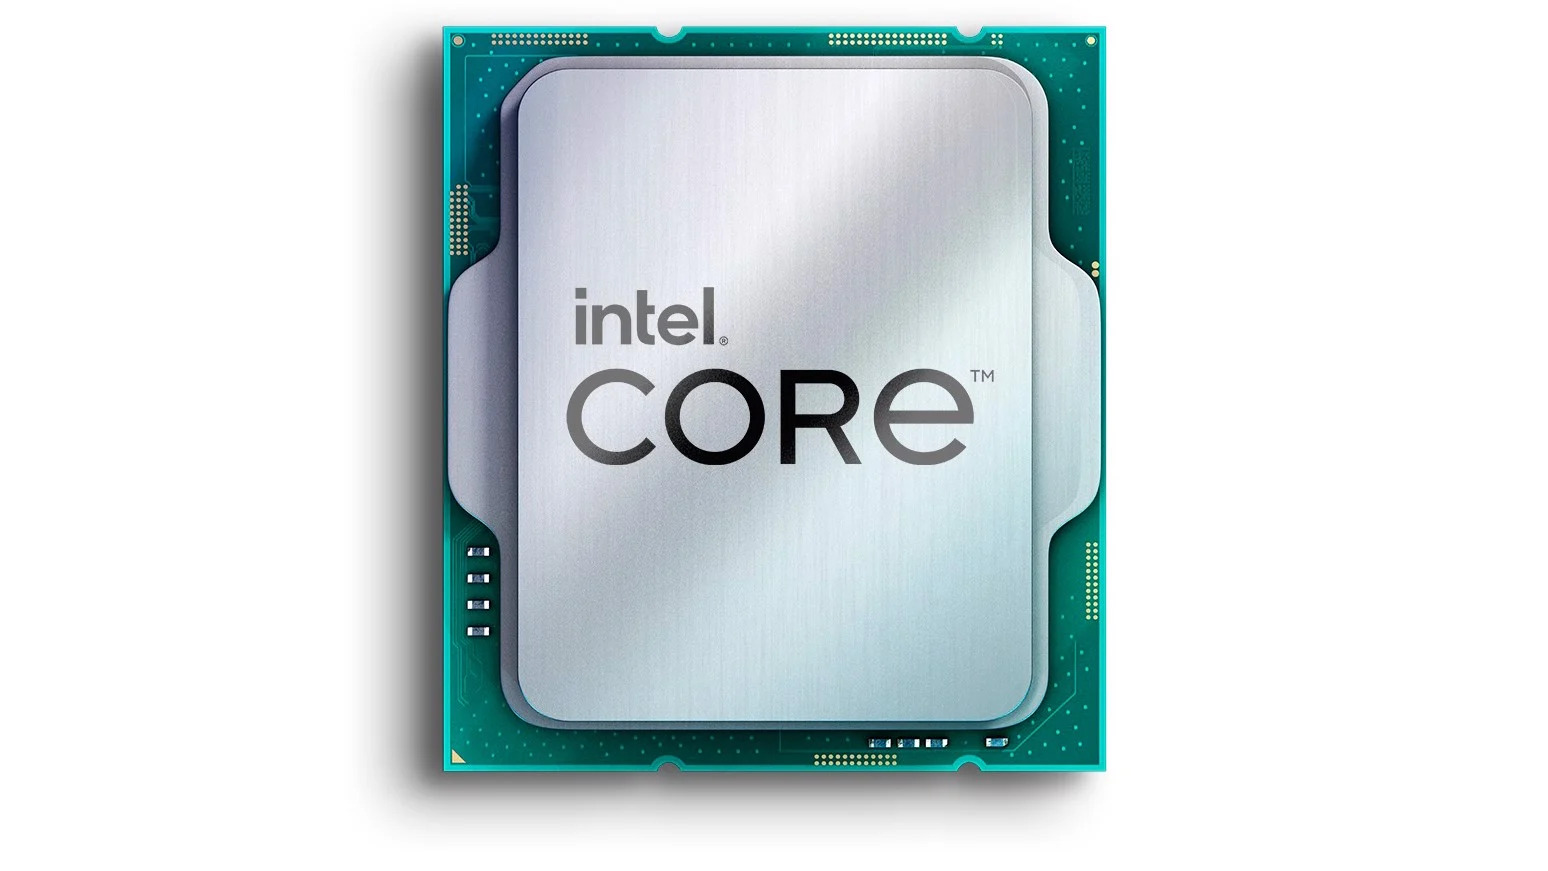 Khám Phá Nguyên Bản Phả Hệ Thống CPU Intel Thế Hệ 14 “Raptor Lake Refresh” Với Các Thông Số Chi Tiết